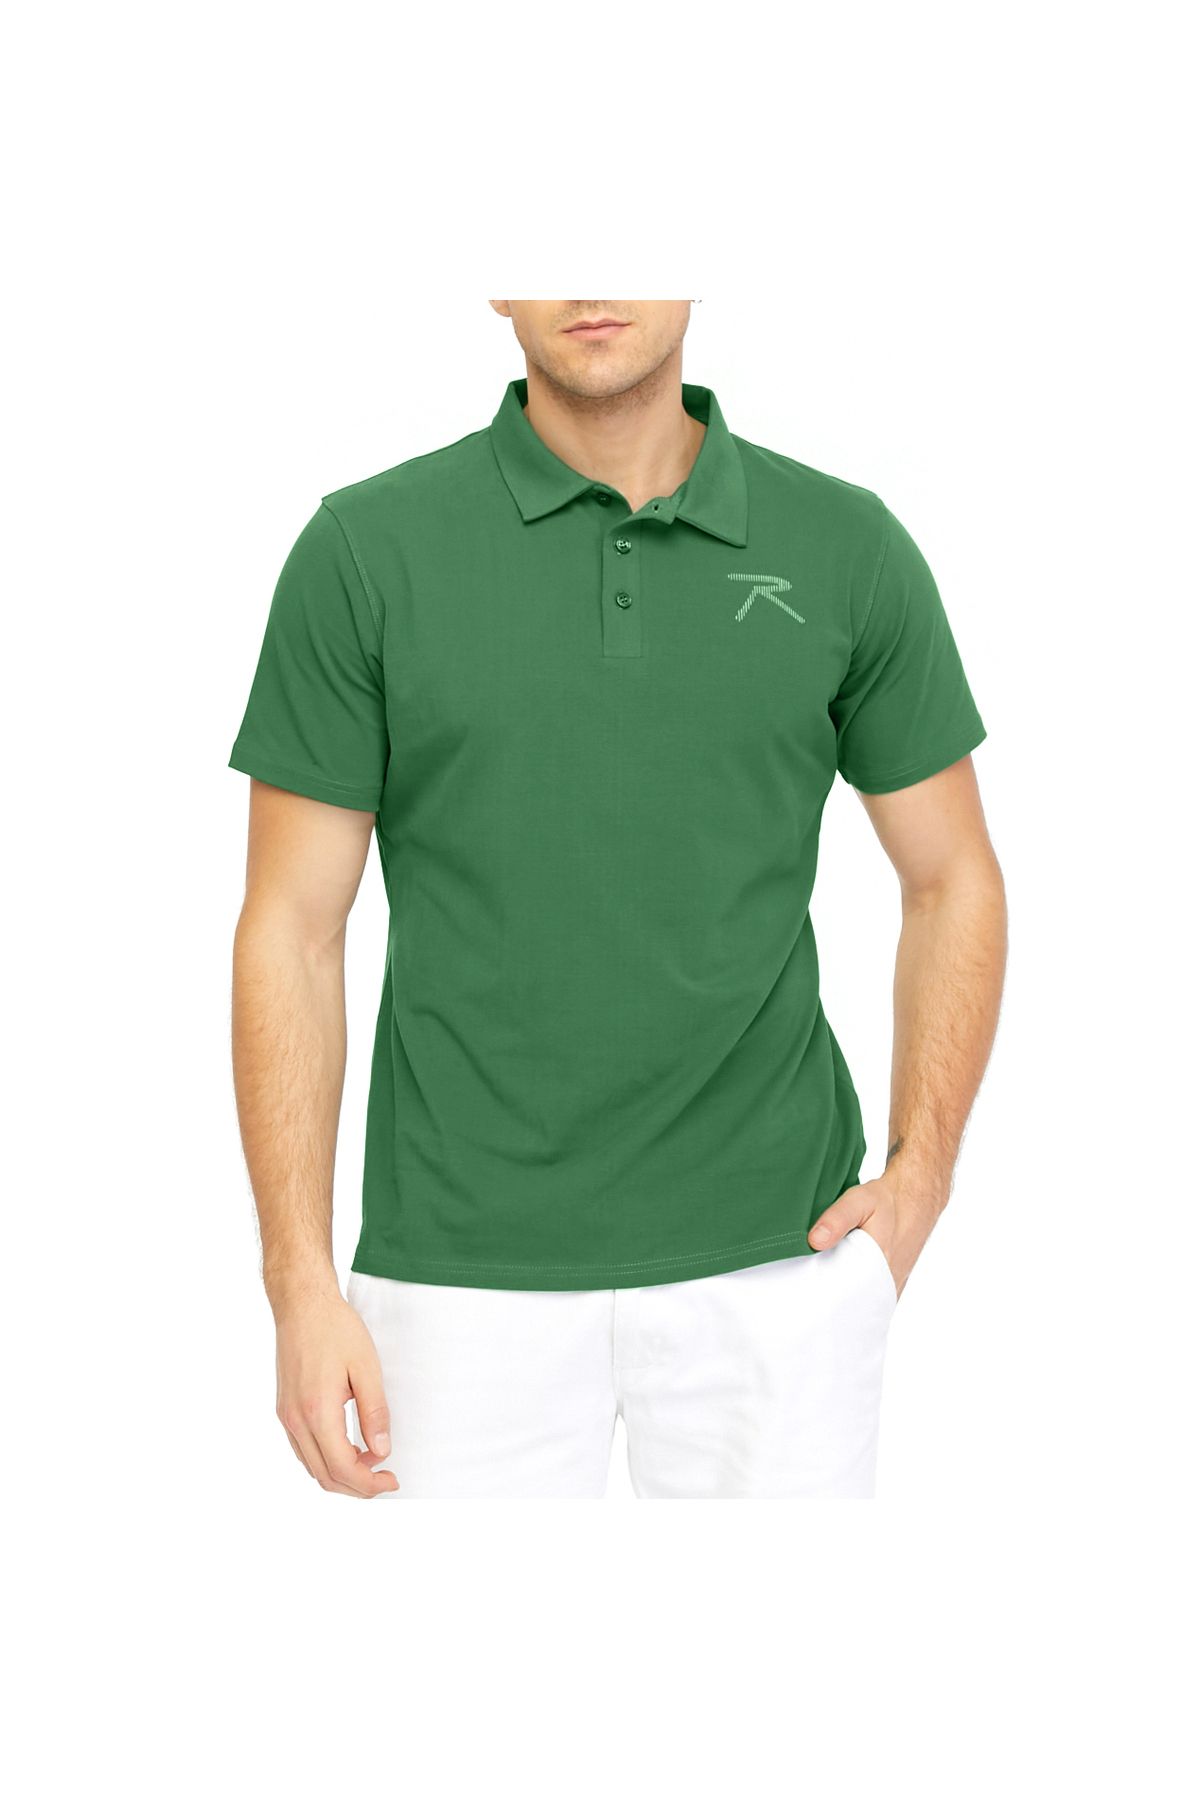 raru Erkek Kısa Kollu Polo T-shirt Ostendo Yeşil